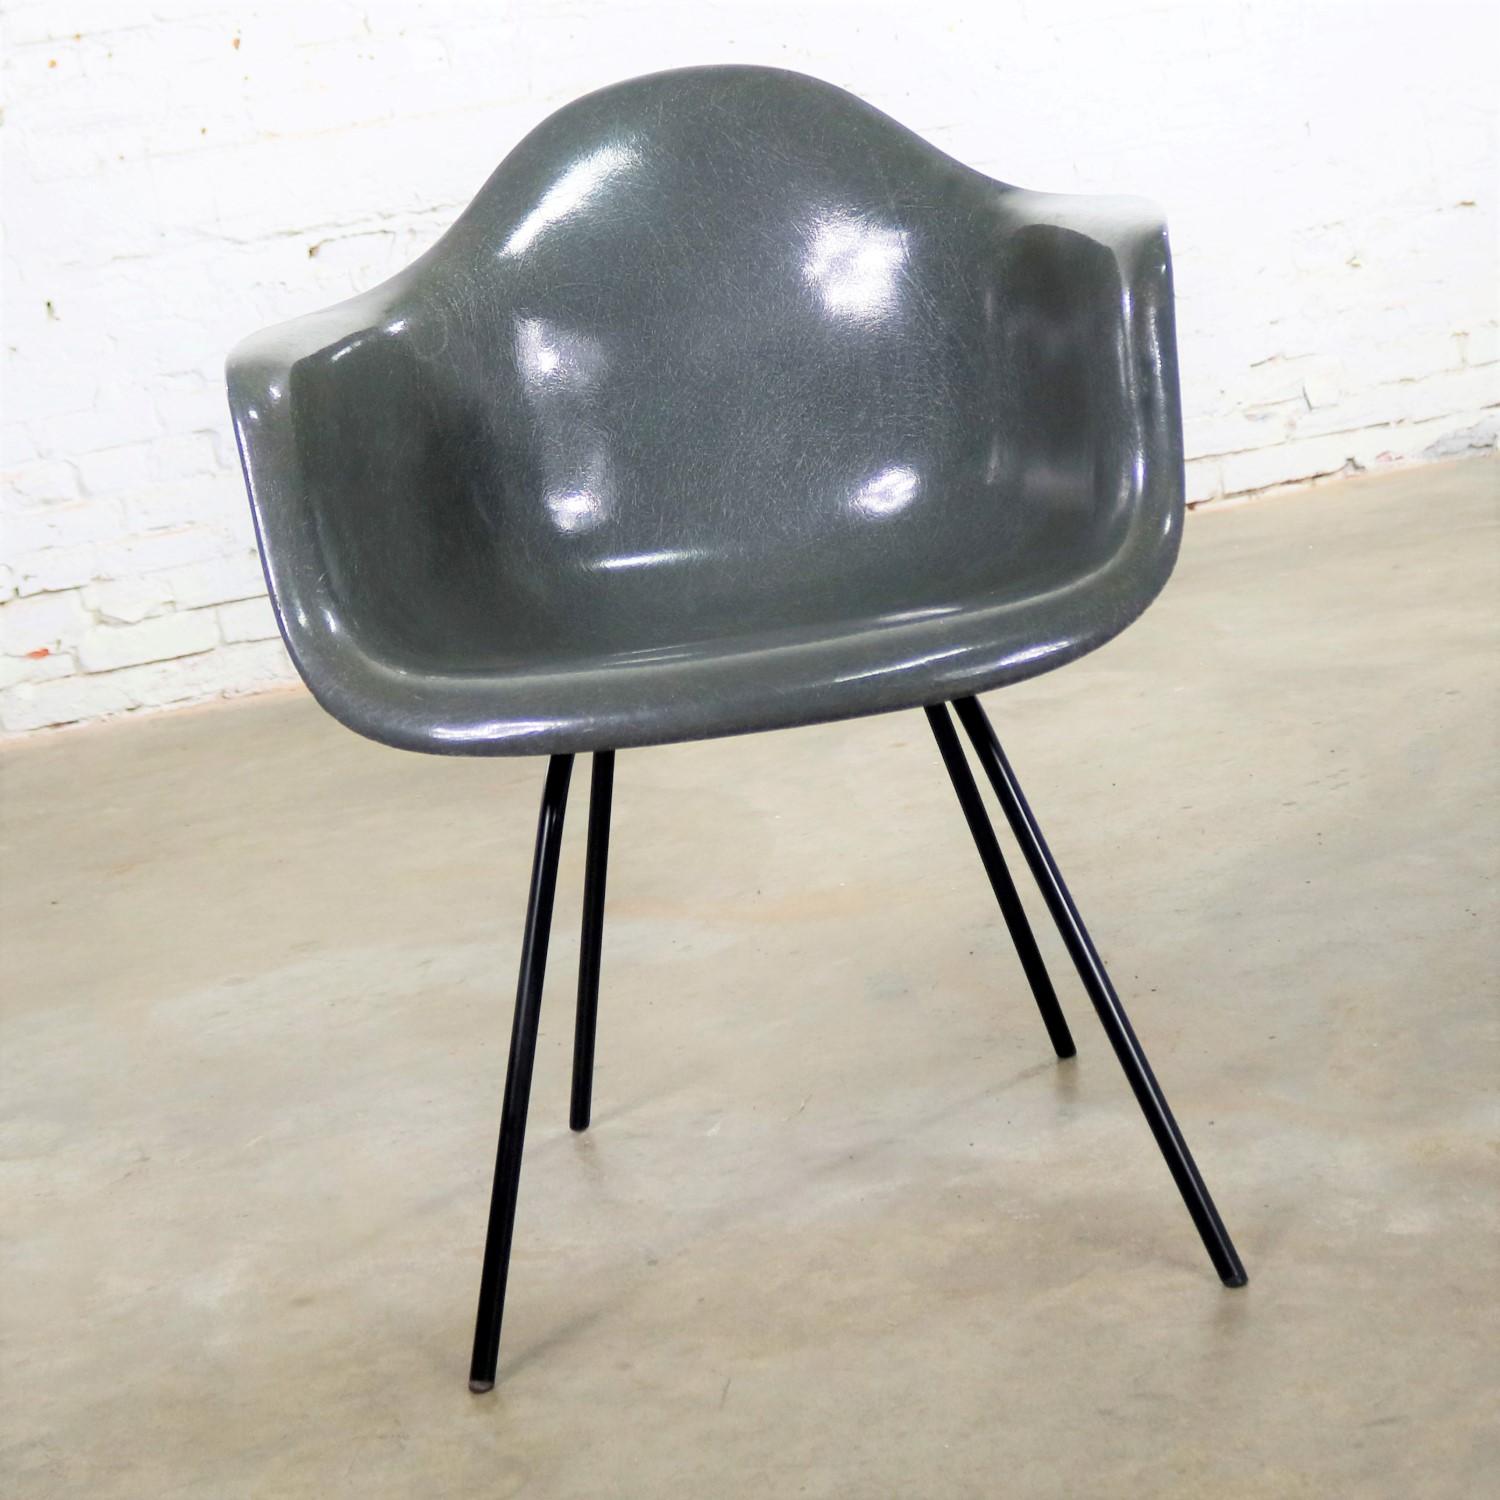 Magnifique exemple de la chaise DAX à accoudoirs en fibre de verre de Charles et Ray Eames pour Herman Miller. Il est en peau d'éléphant grise avec une base H noire et des pieds glissants inhabituels. Il conserve une étiquette en papier mais ne